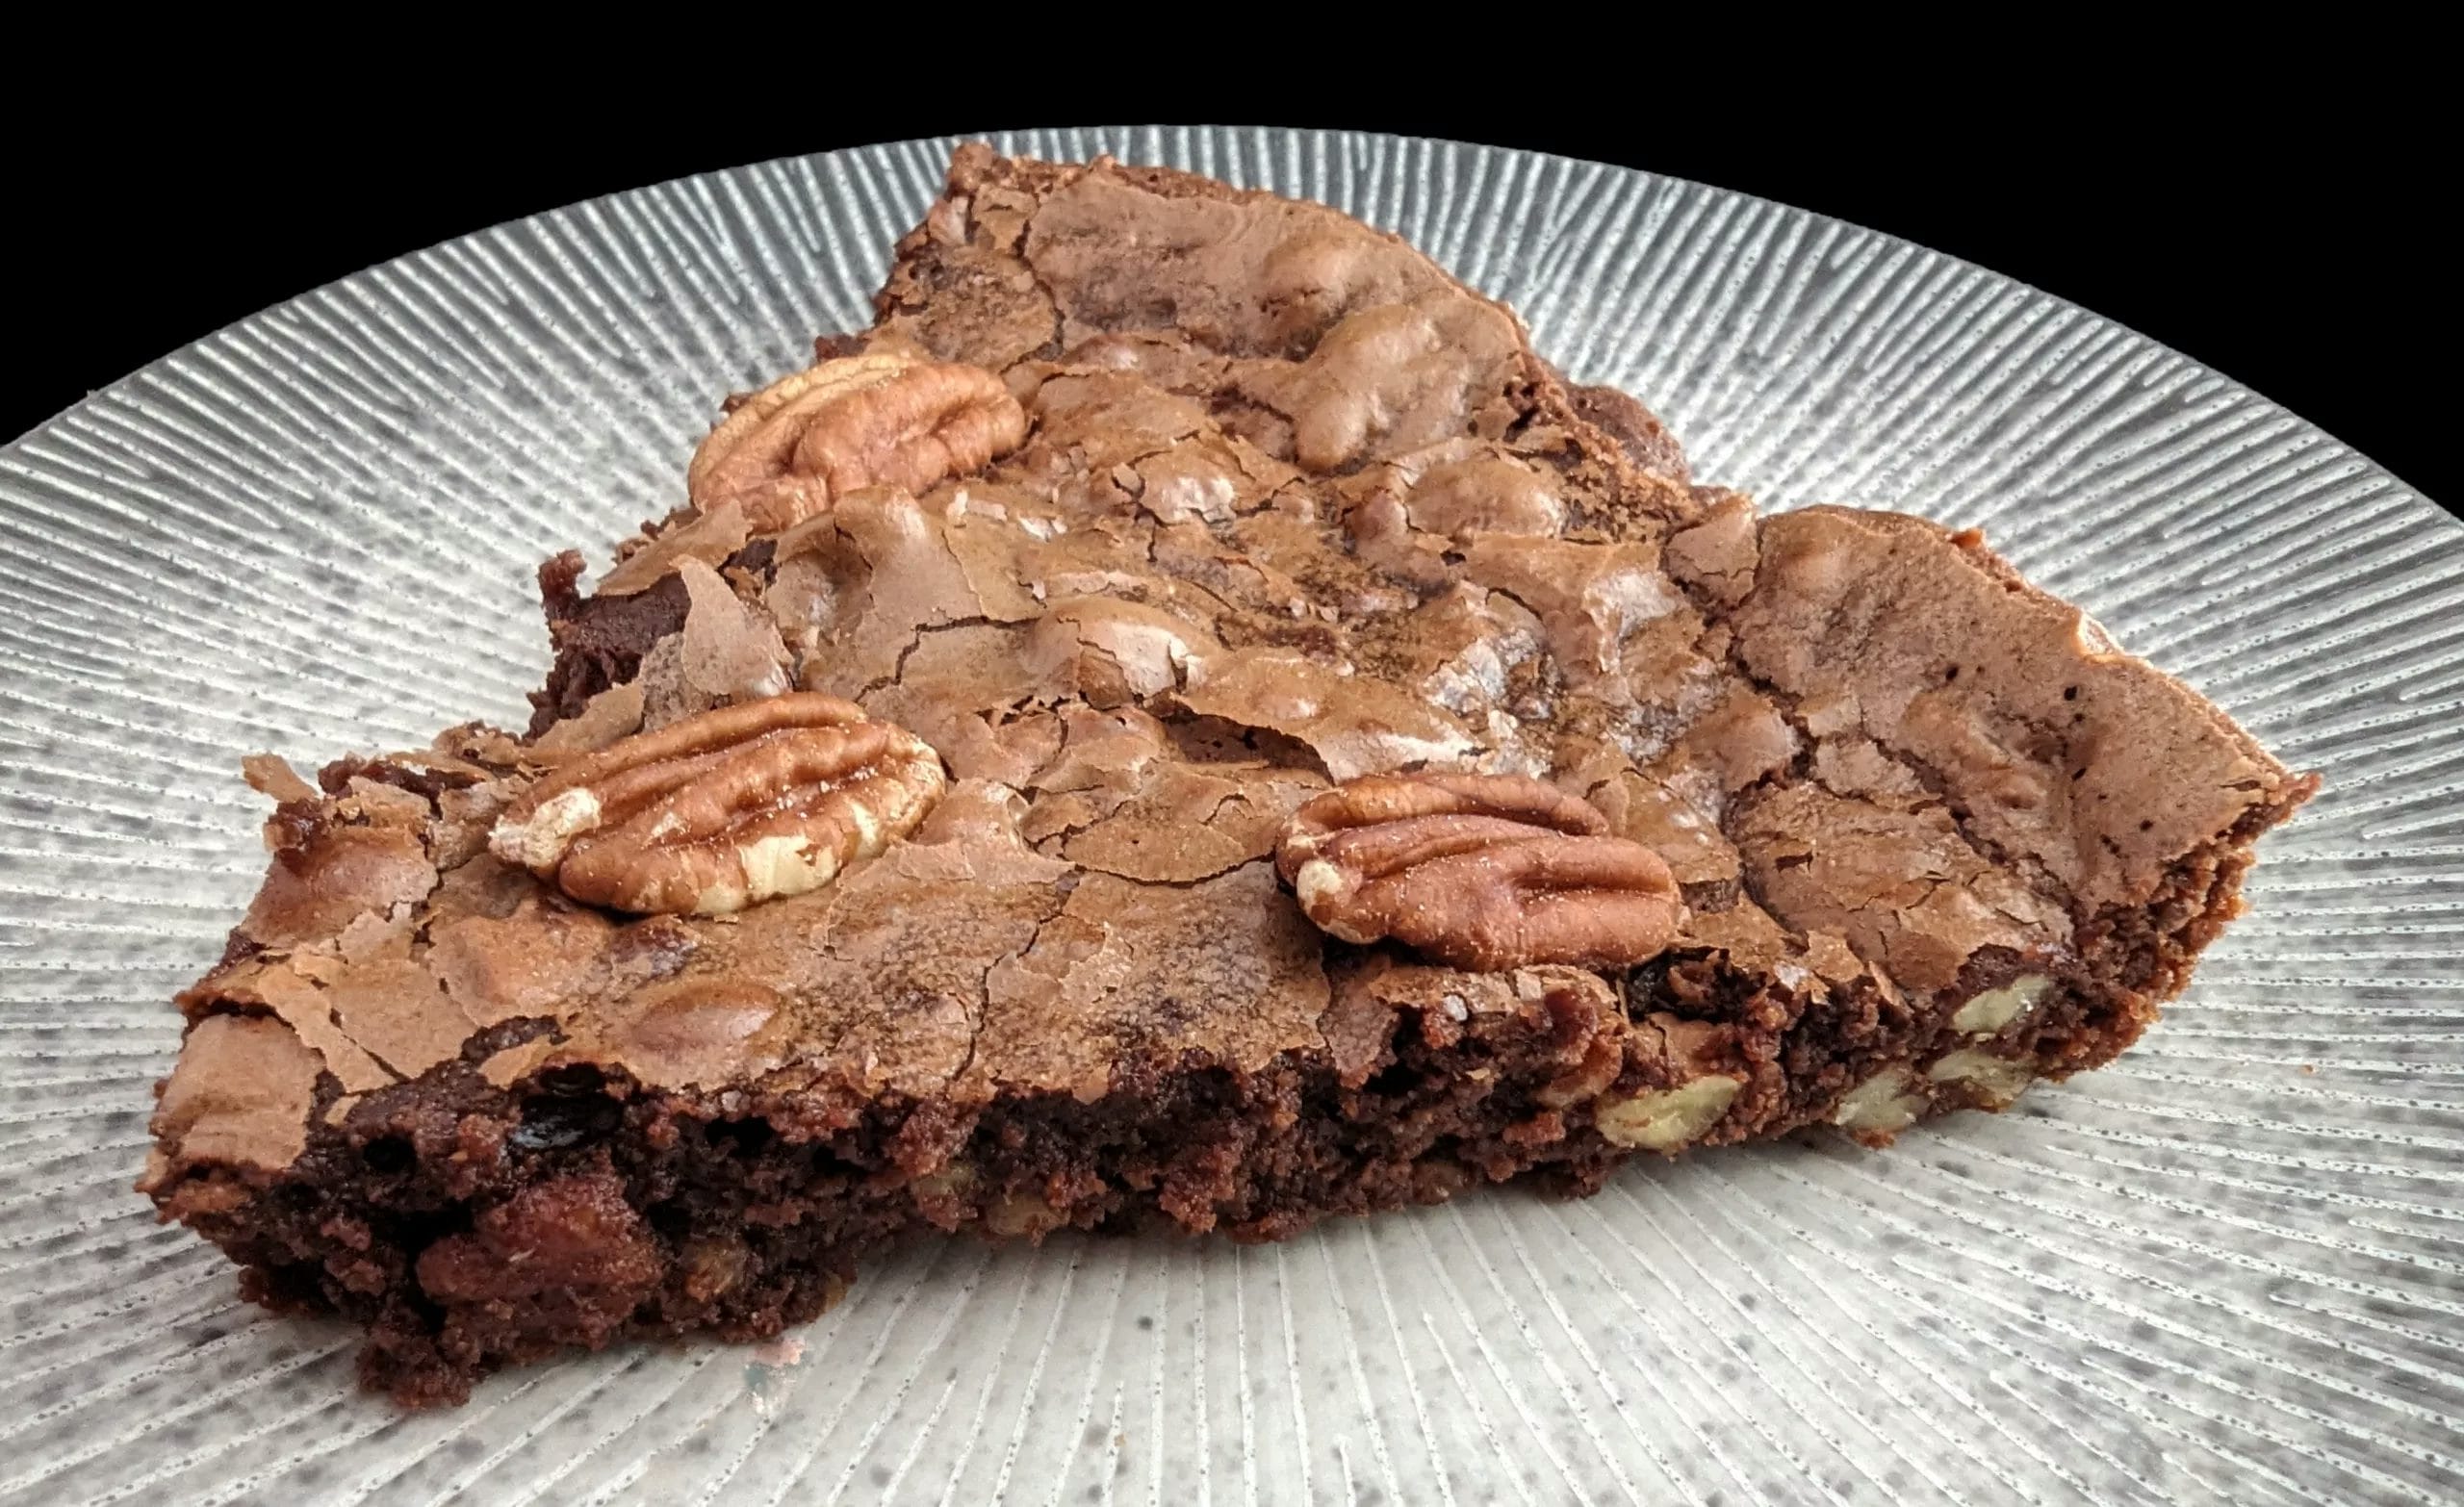 Les secrets d'un brownie aux noix de pécan parfait : découvrez-les ici !